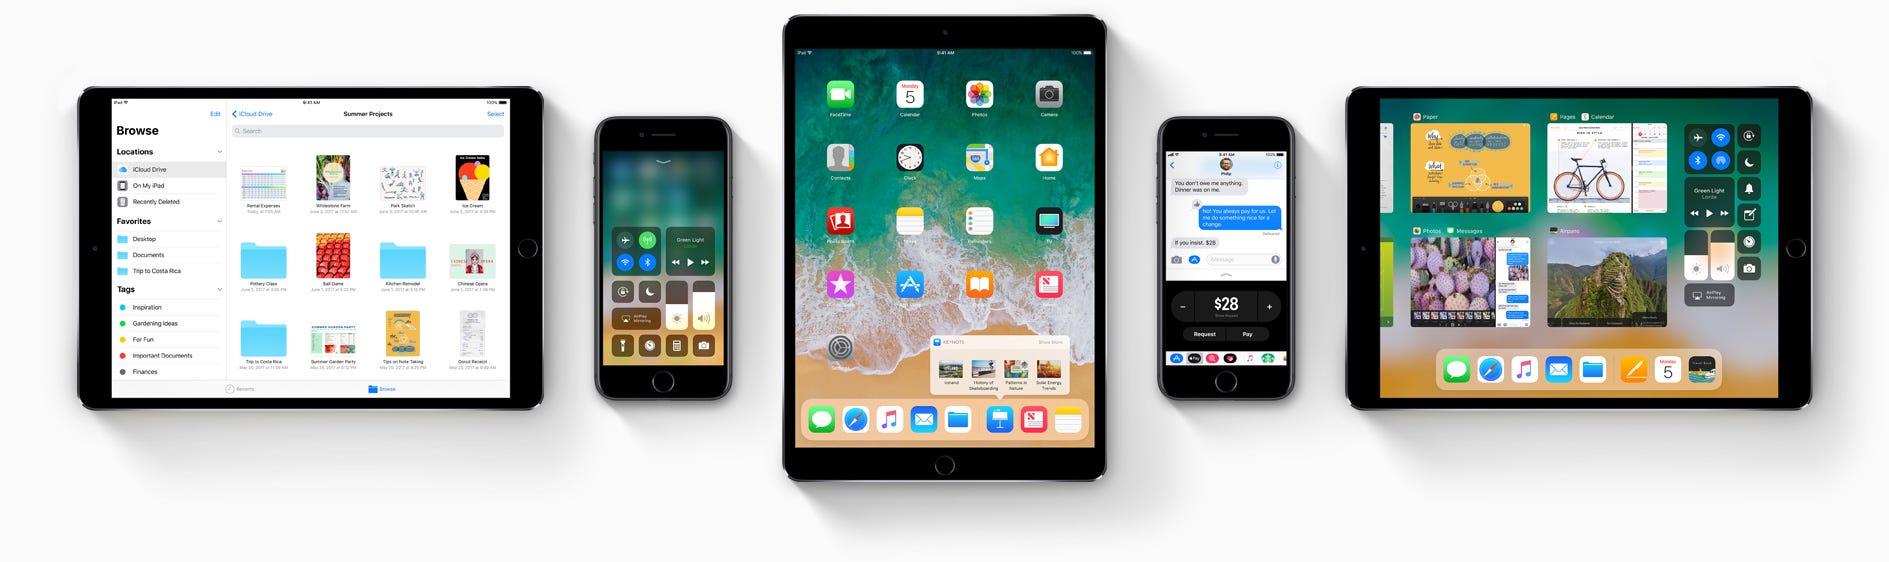 Apple libera la beta 4 de iOS 11, watchOS 4 y tvOS 11